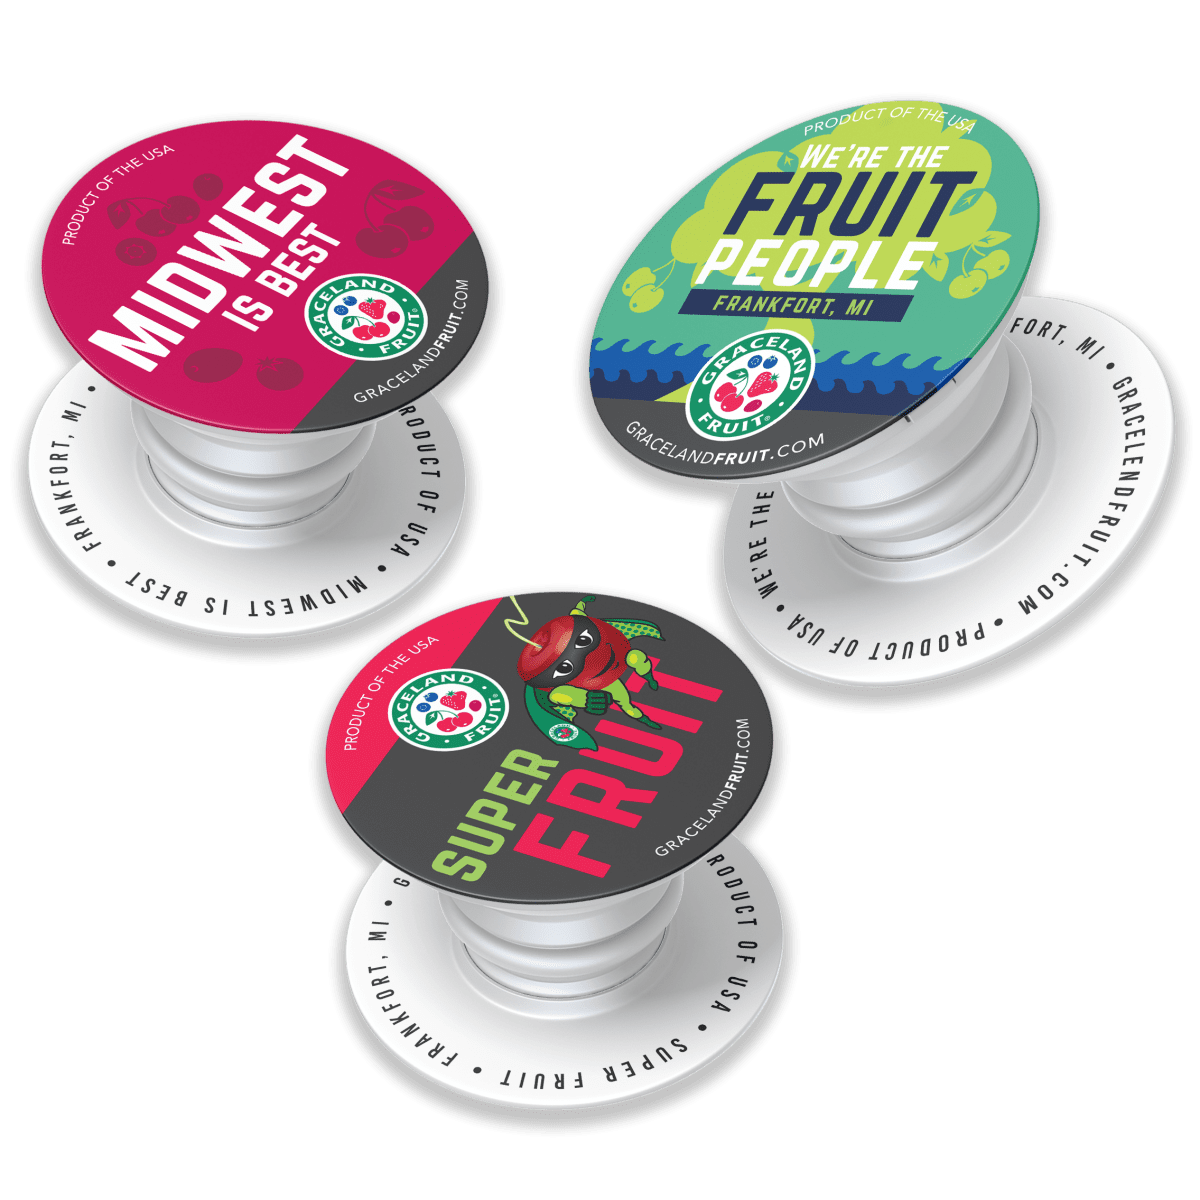 Three custom PopSockets designed to promote Graceland Fruit